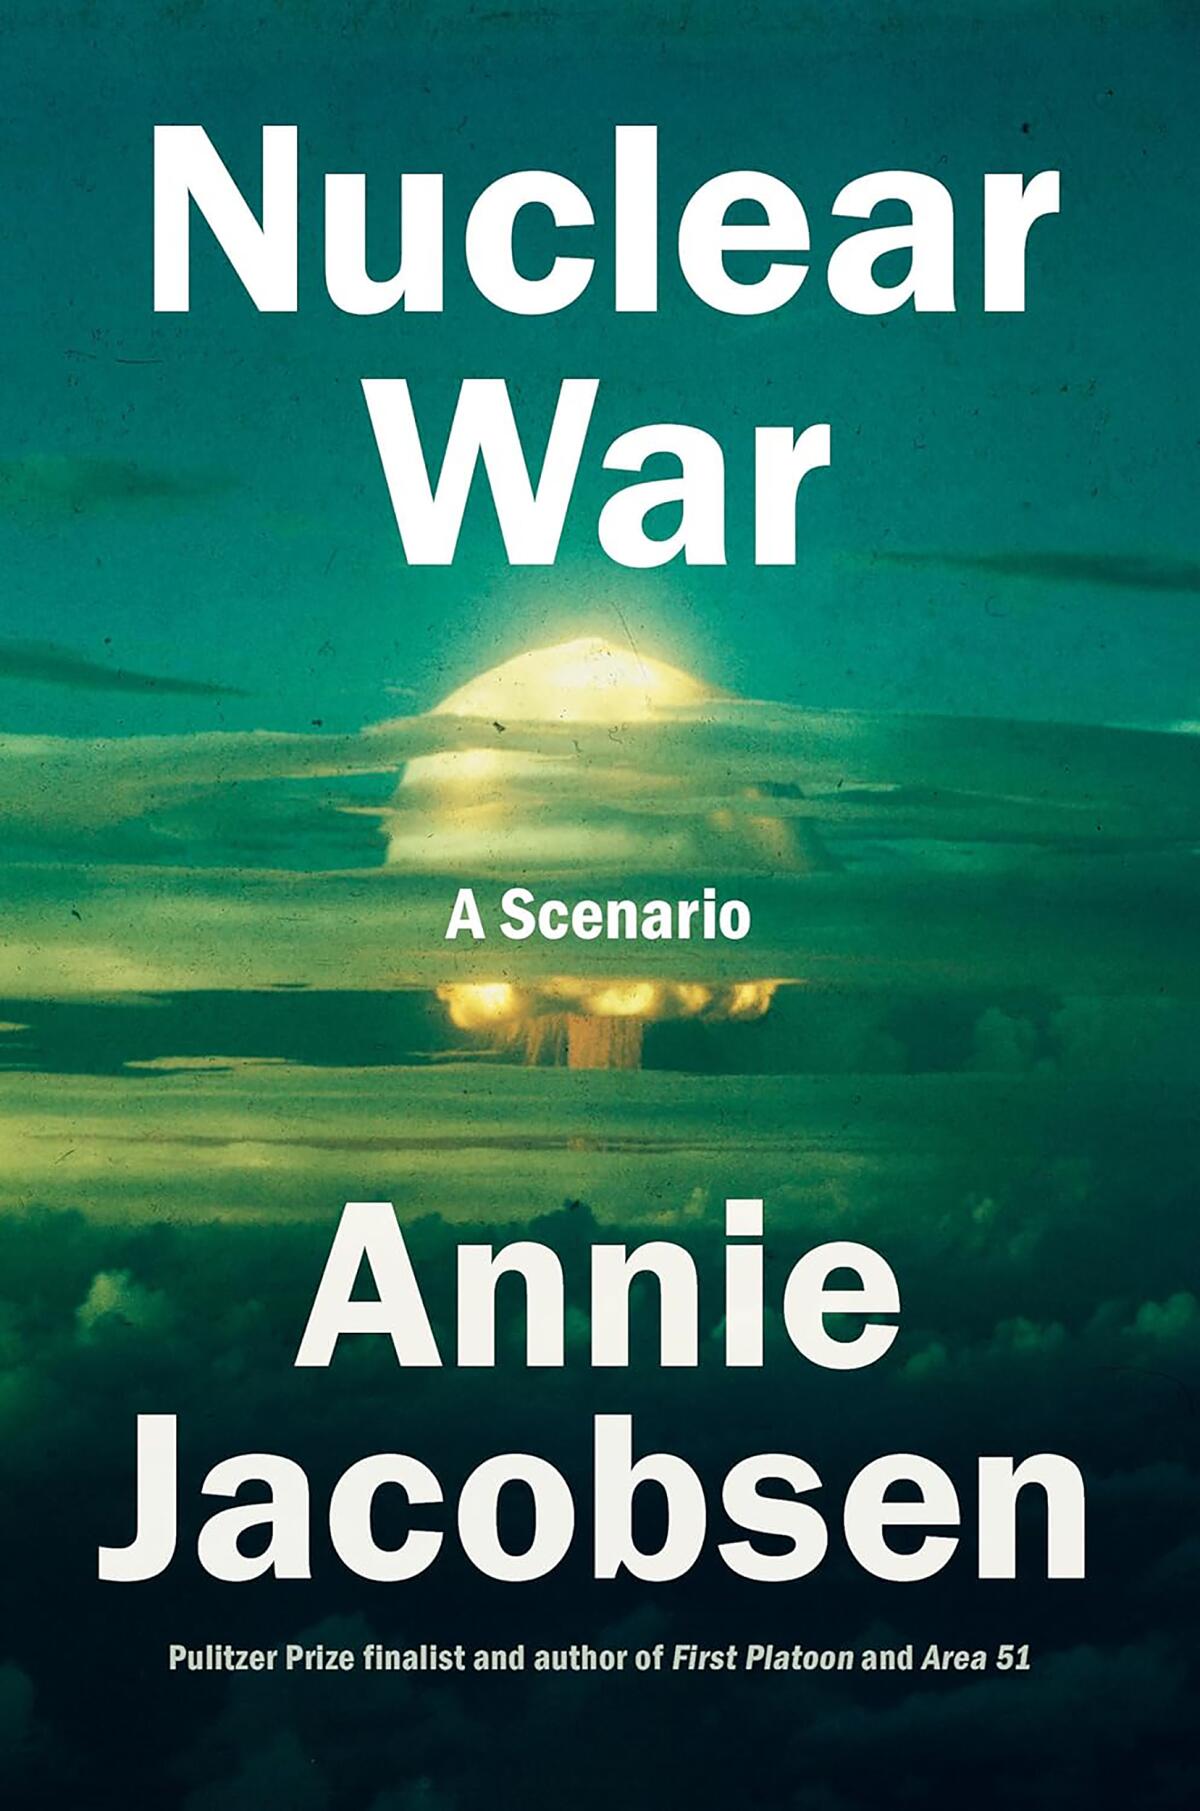 "Nuclear War: A Scenario" by Annie Jacobsen